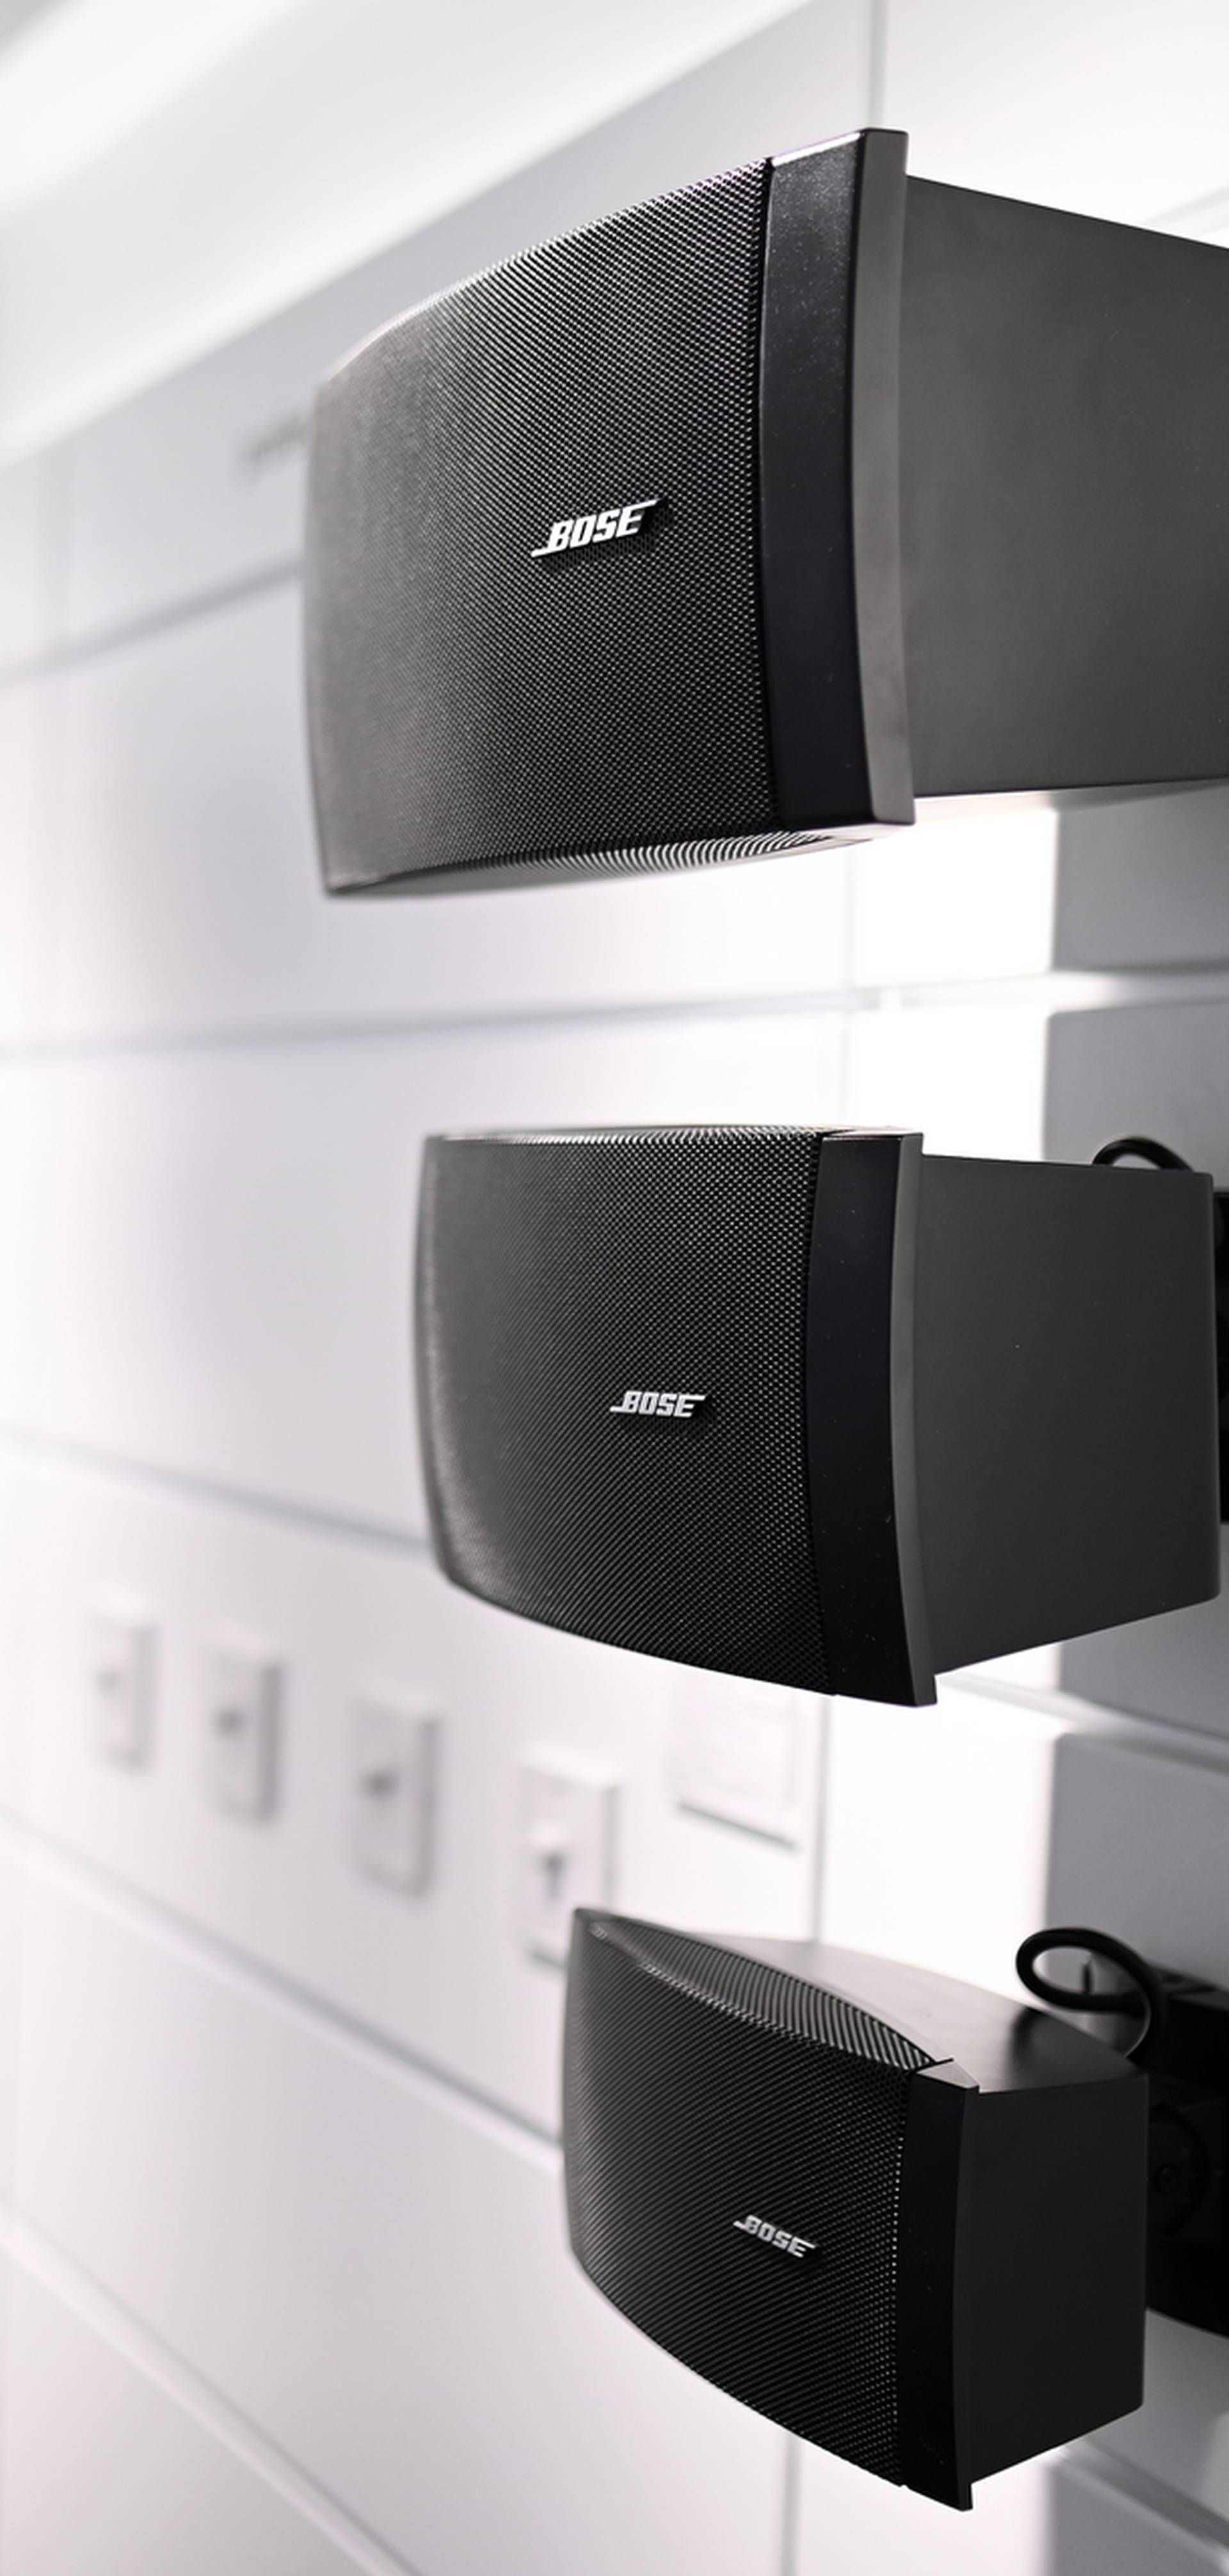 Zagreb dobio Bose premium shop, predstavili audio naočale